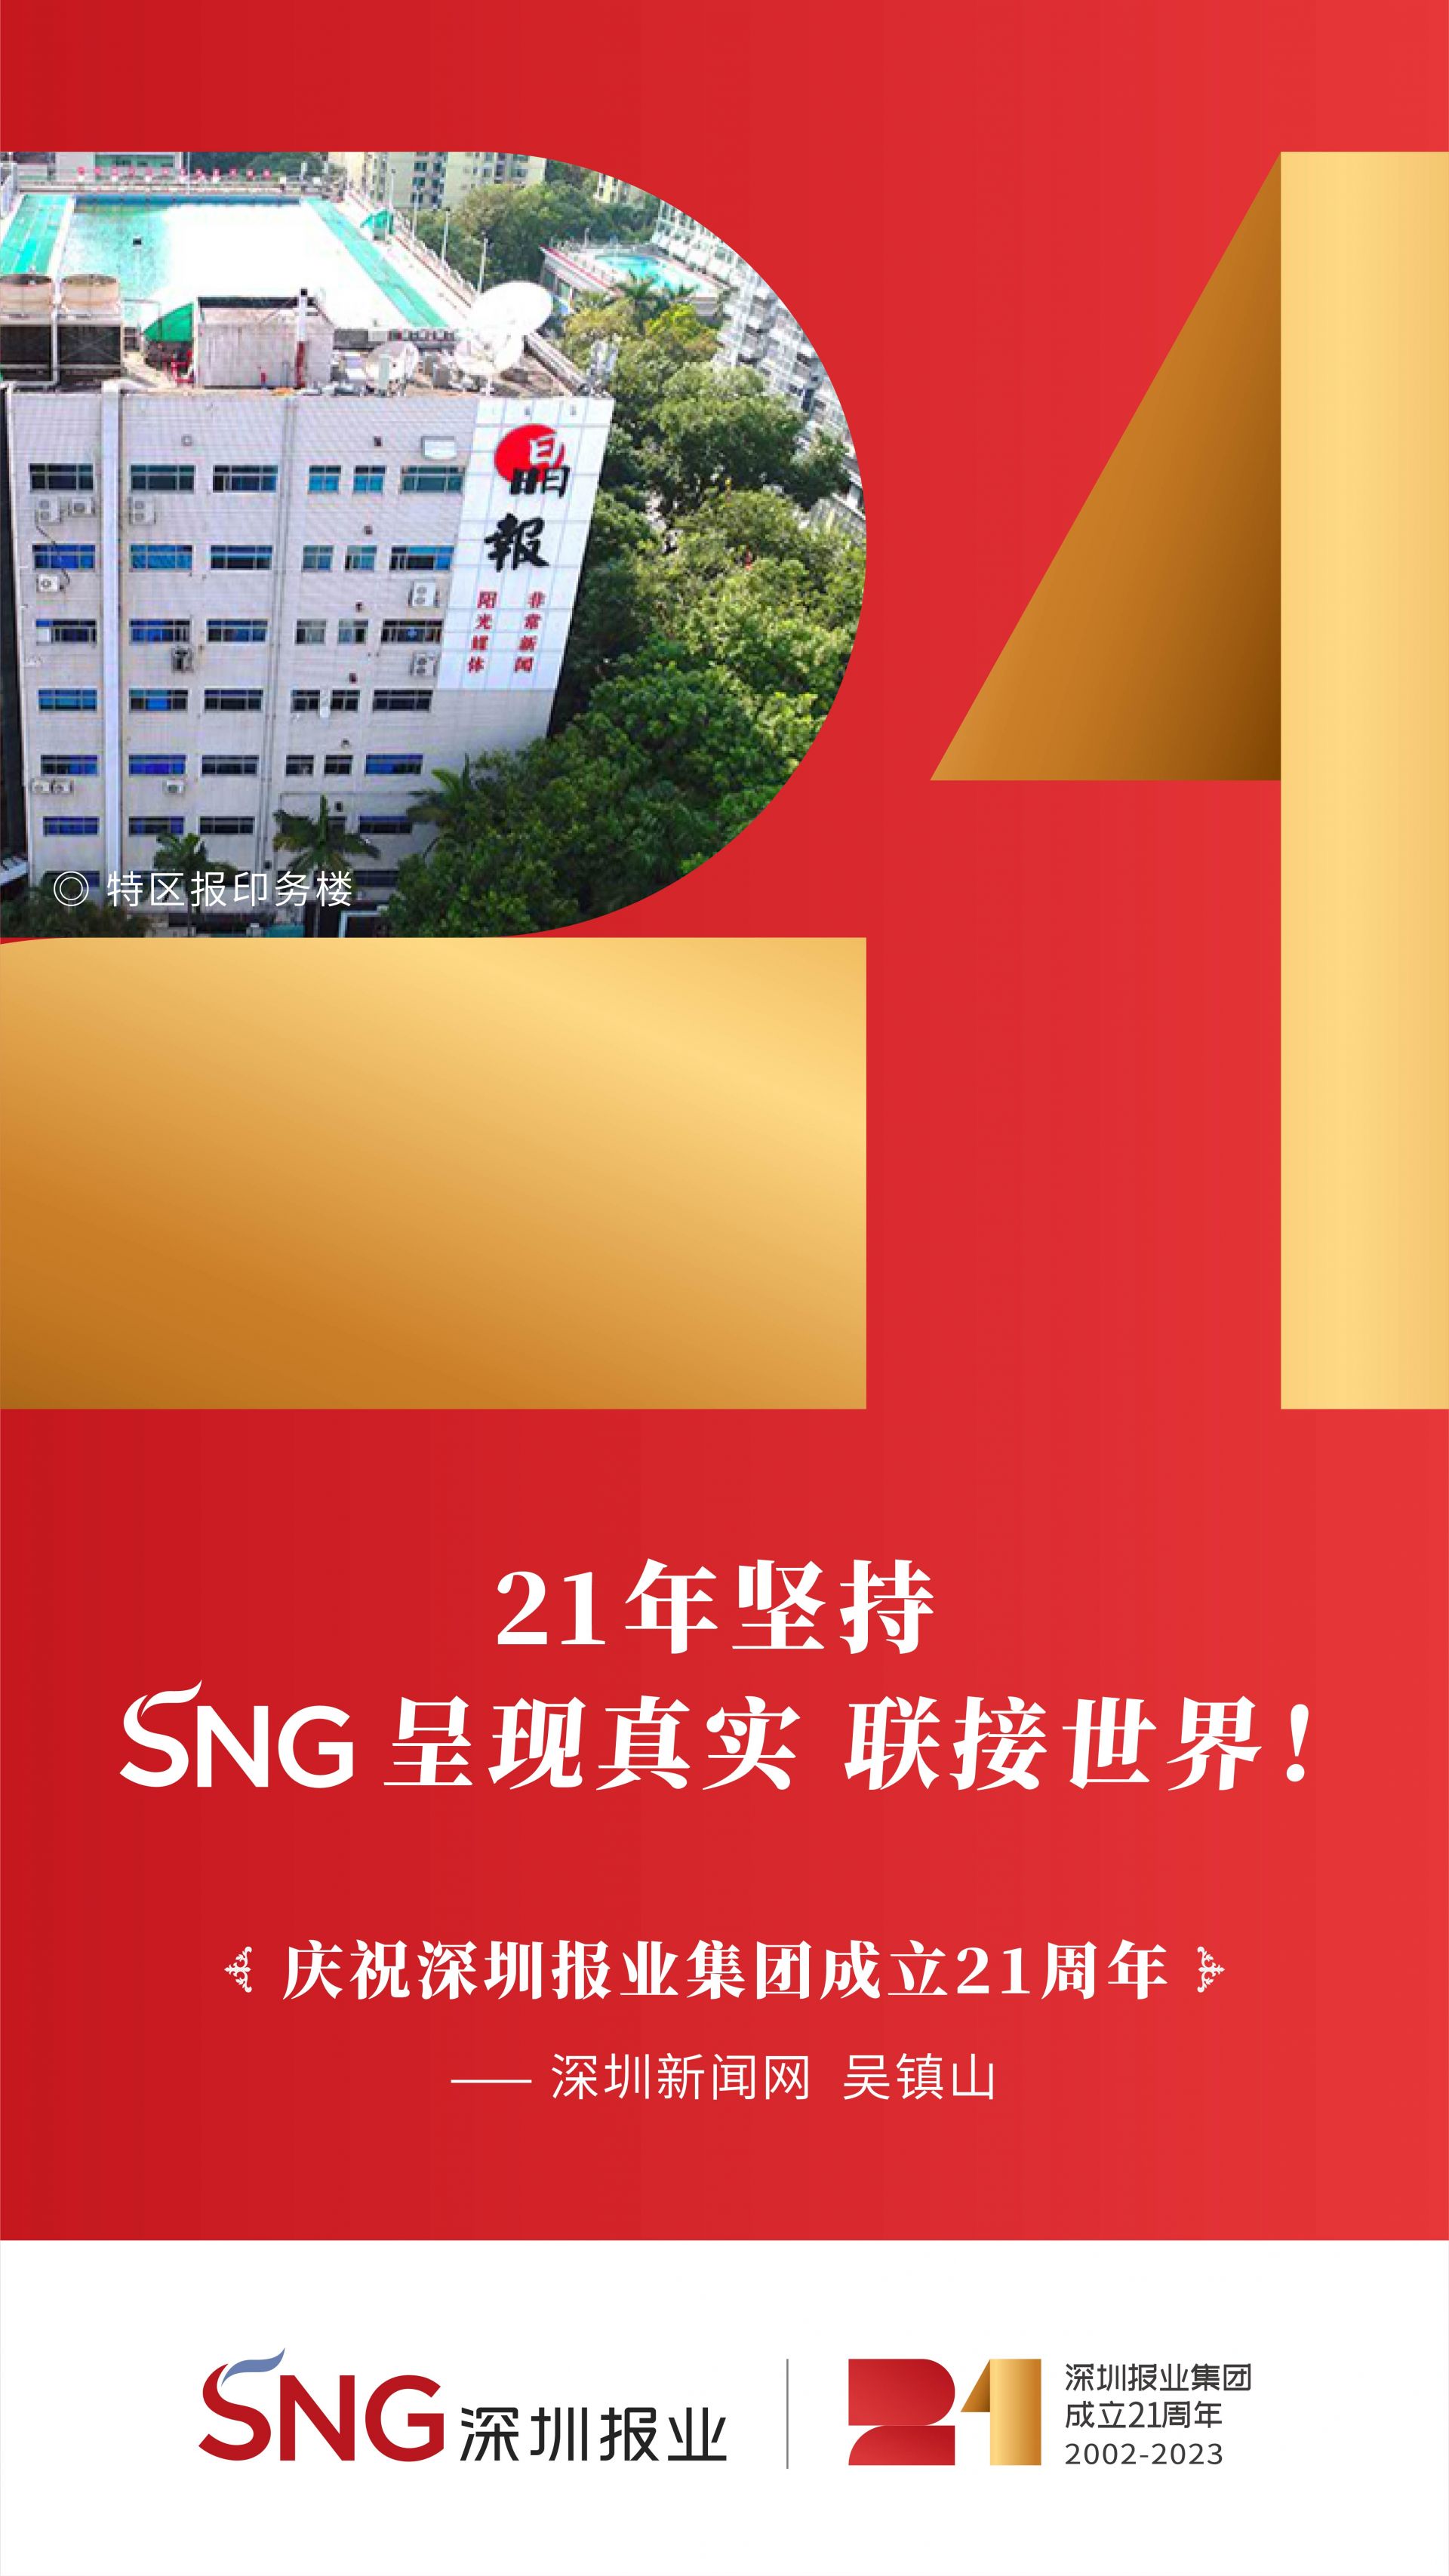 深圳报业集团将迎21岁生日9处地标集结谁的青春dna动了